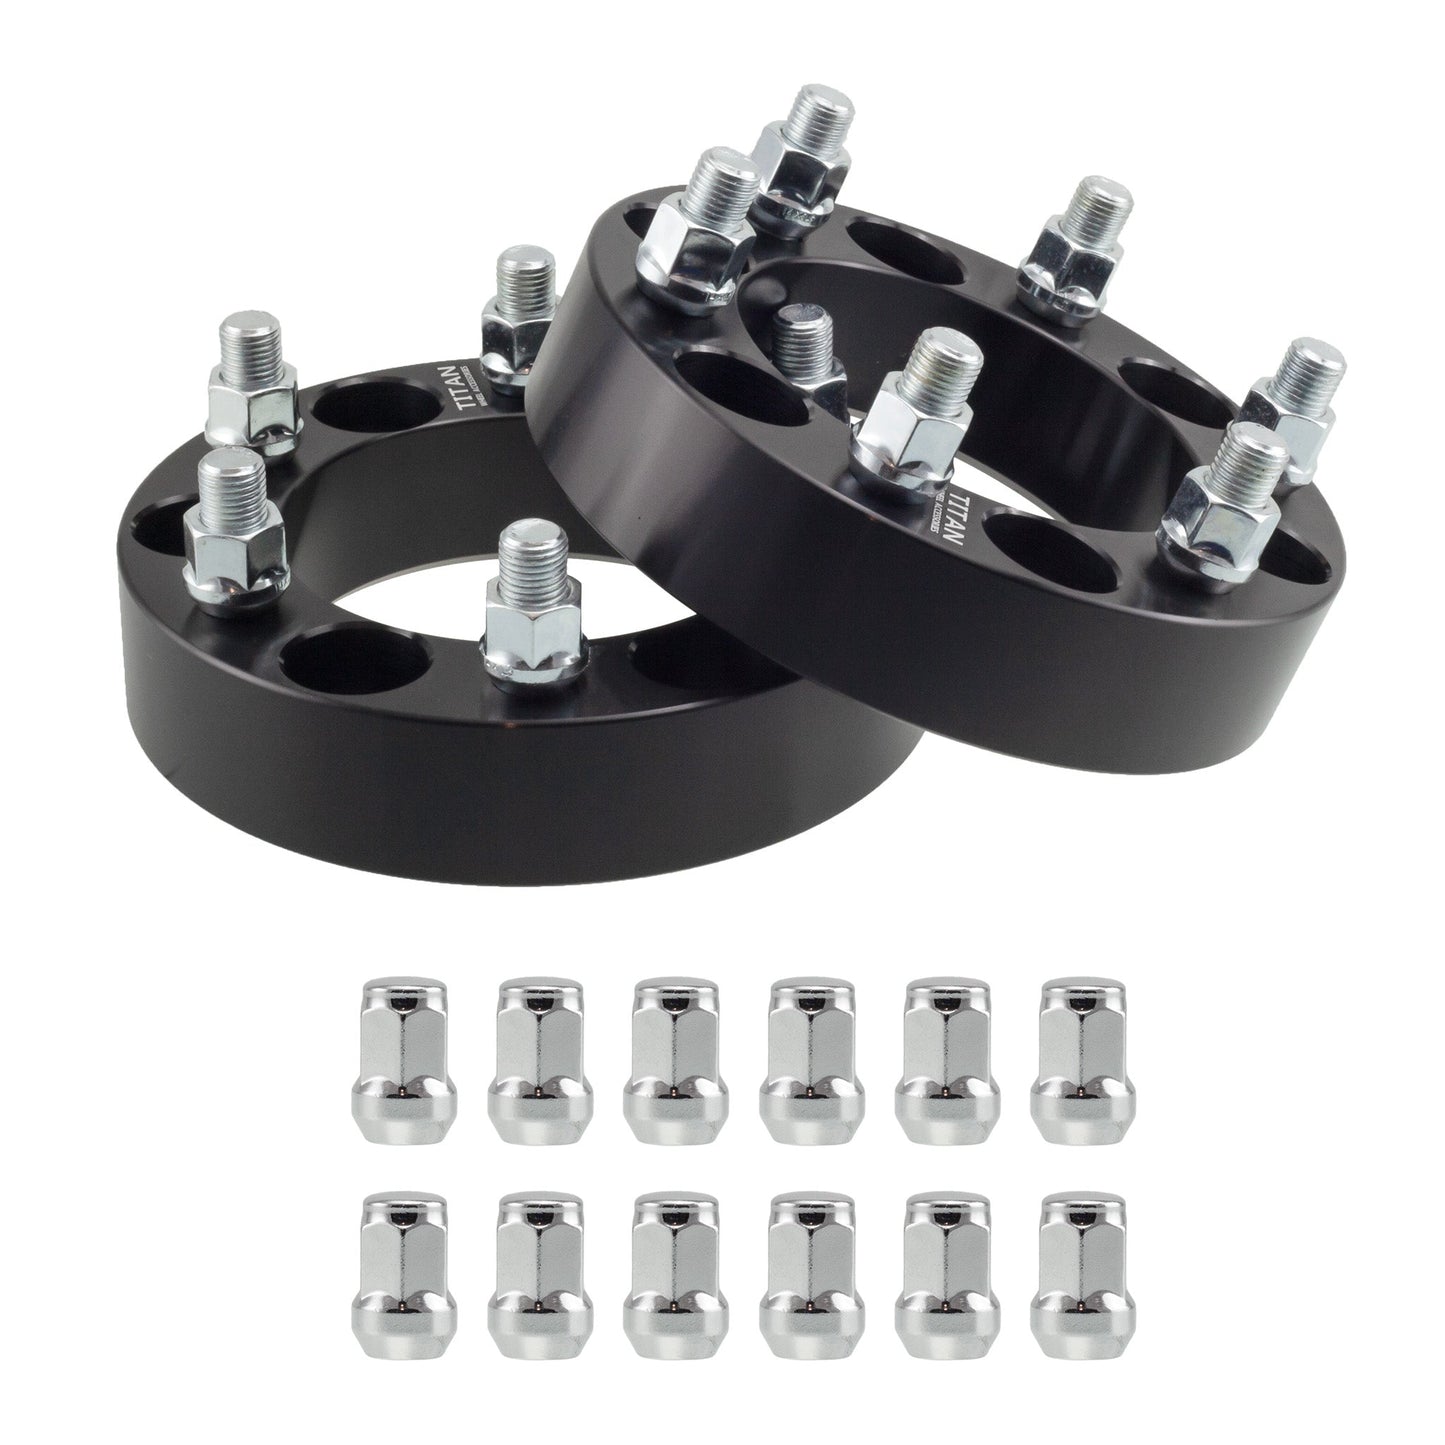 1" (25mm) Titan Wheel Spacers for Infiniti QX56 Nissan Armada Titan | 6x5.5 (6x139.7) | 77.8 Hubcentric |12x1.25 Studs | Titan Wheel Accessories